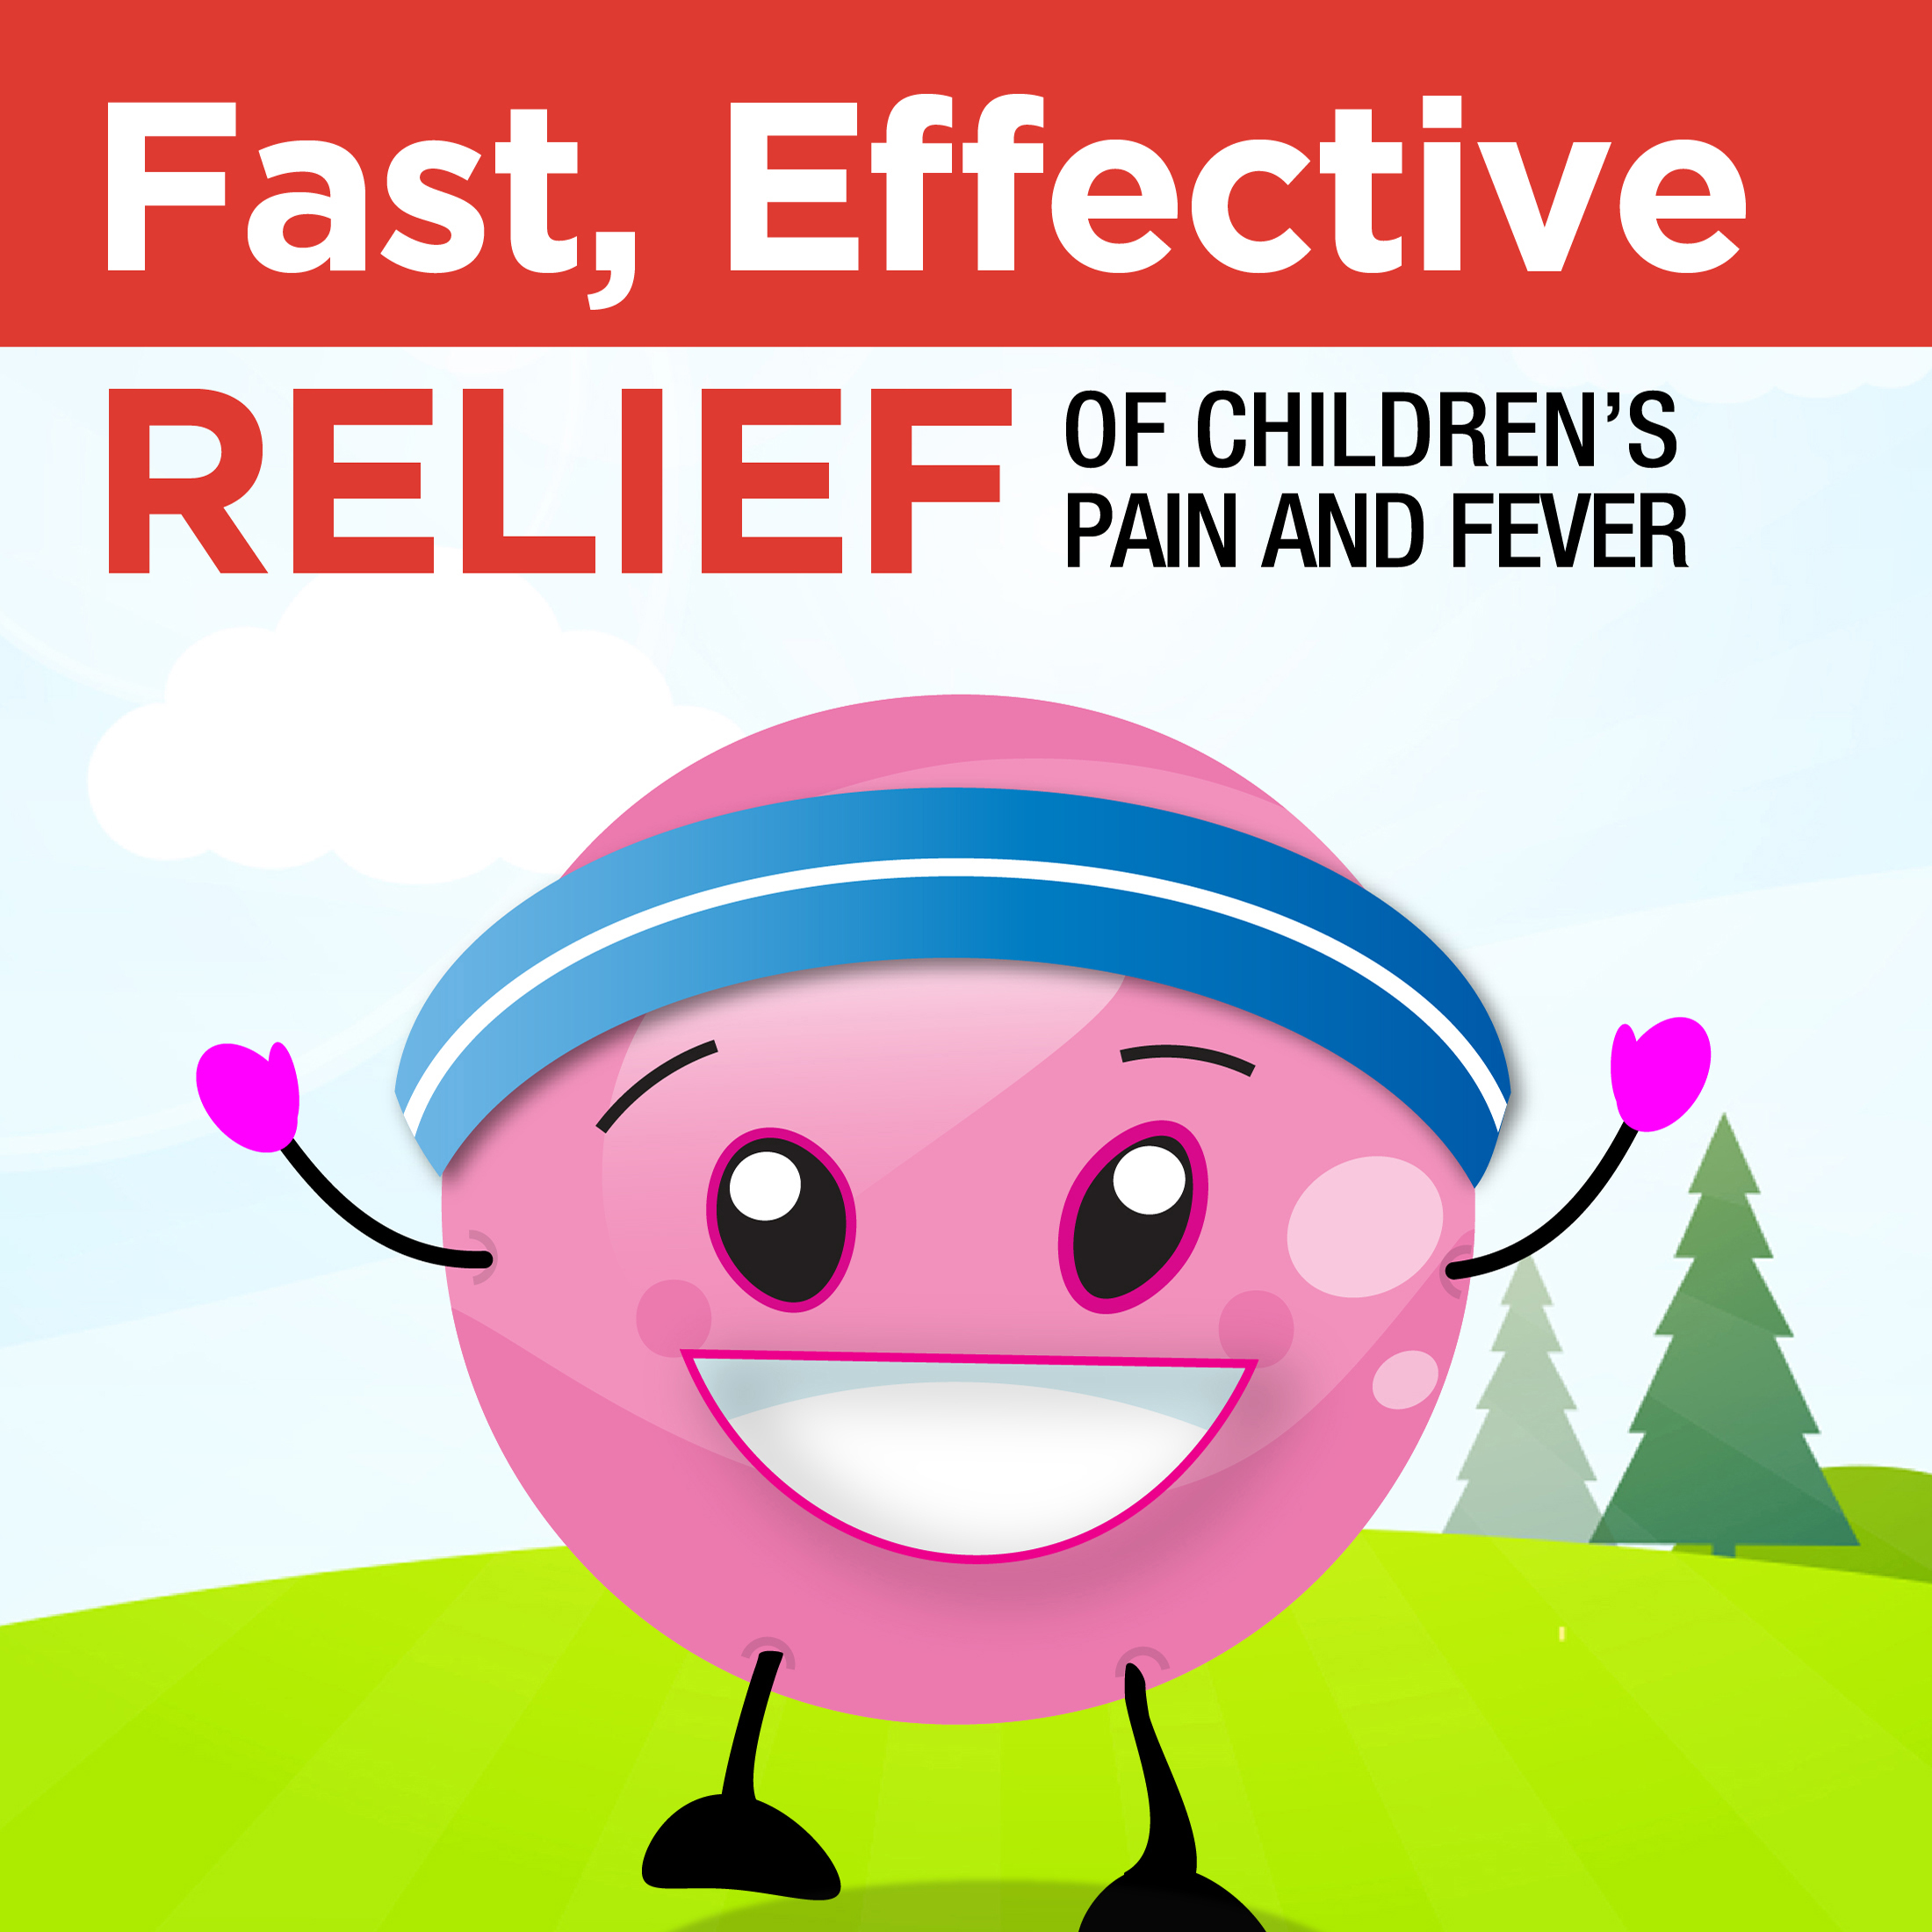 Equate Children's Pain Reliever Oral Suspension Liquid, Bubble Gum Flavor, Acetaminophen 160 mg per 5 ml, 4 fl oz - image 5 of 7